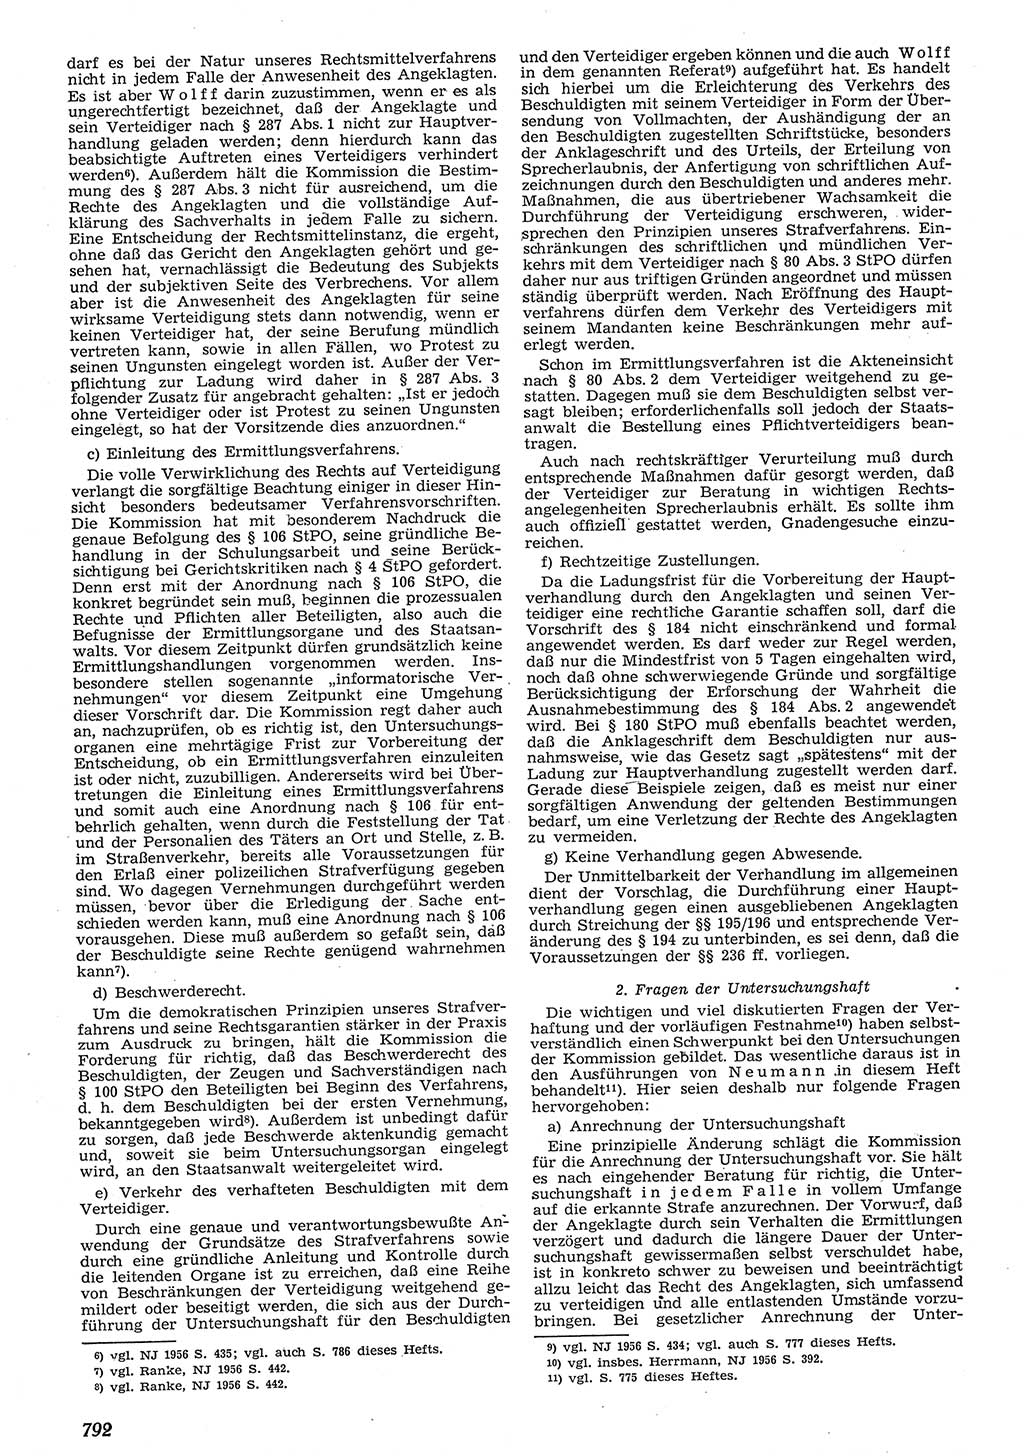 Neue Justiz (NJ), Zeitschrift für Recht und Rechtswissenschaft [Deutsche Demokratische Republik (DDR)], 10. Jahrgang 1956, Seite 792 (NJ DDR 1956, S. 792)